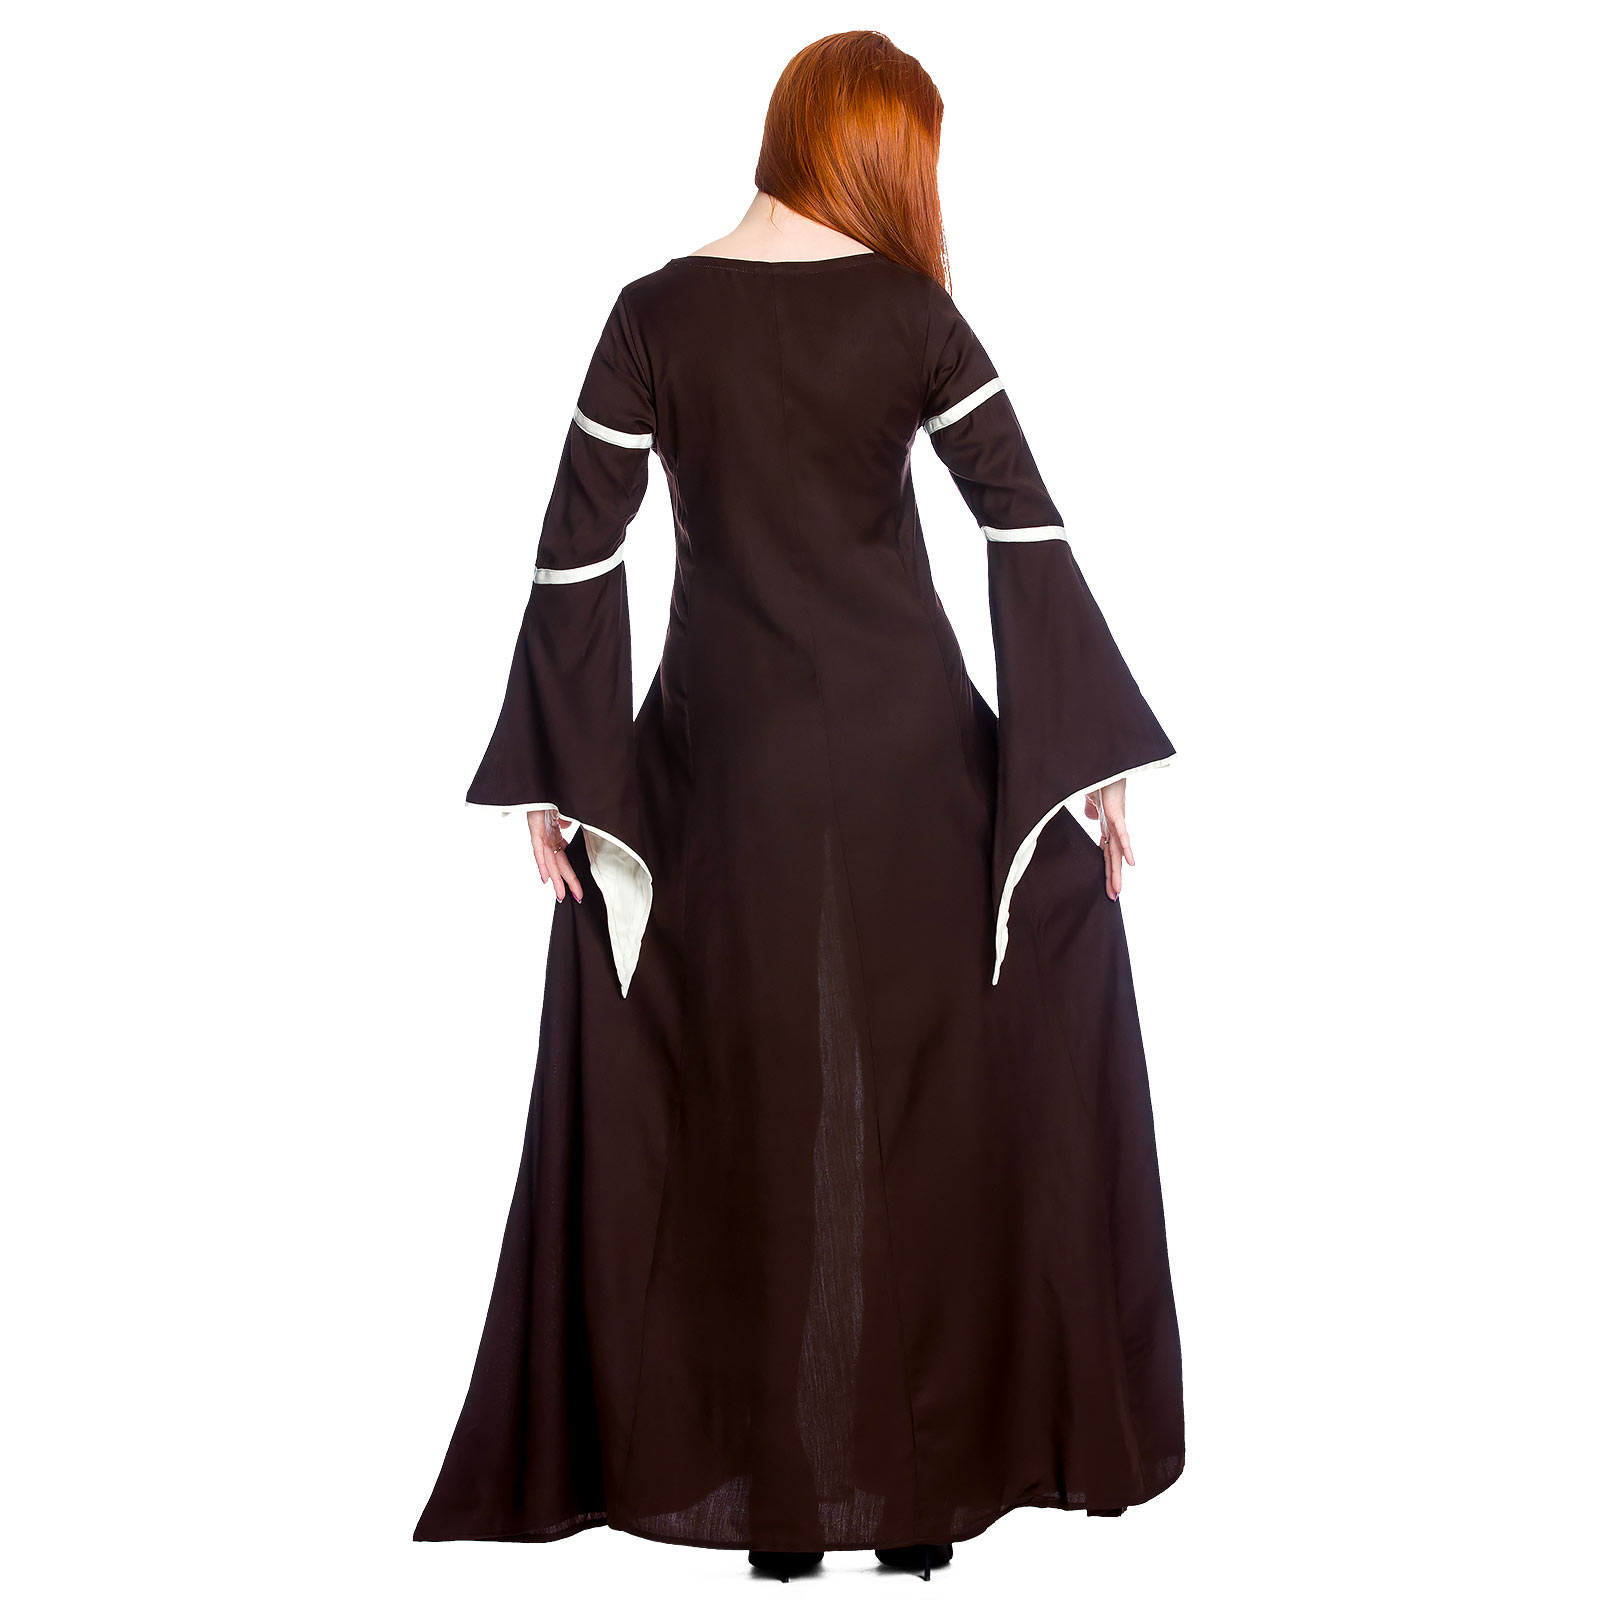 Middeleeuwse jurk Katherina bruin-natuur